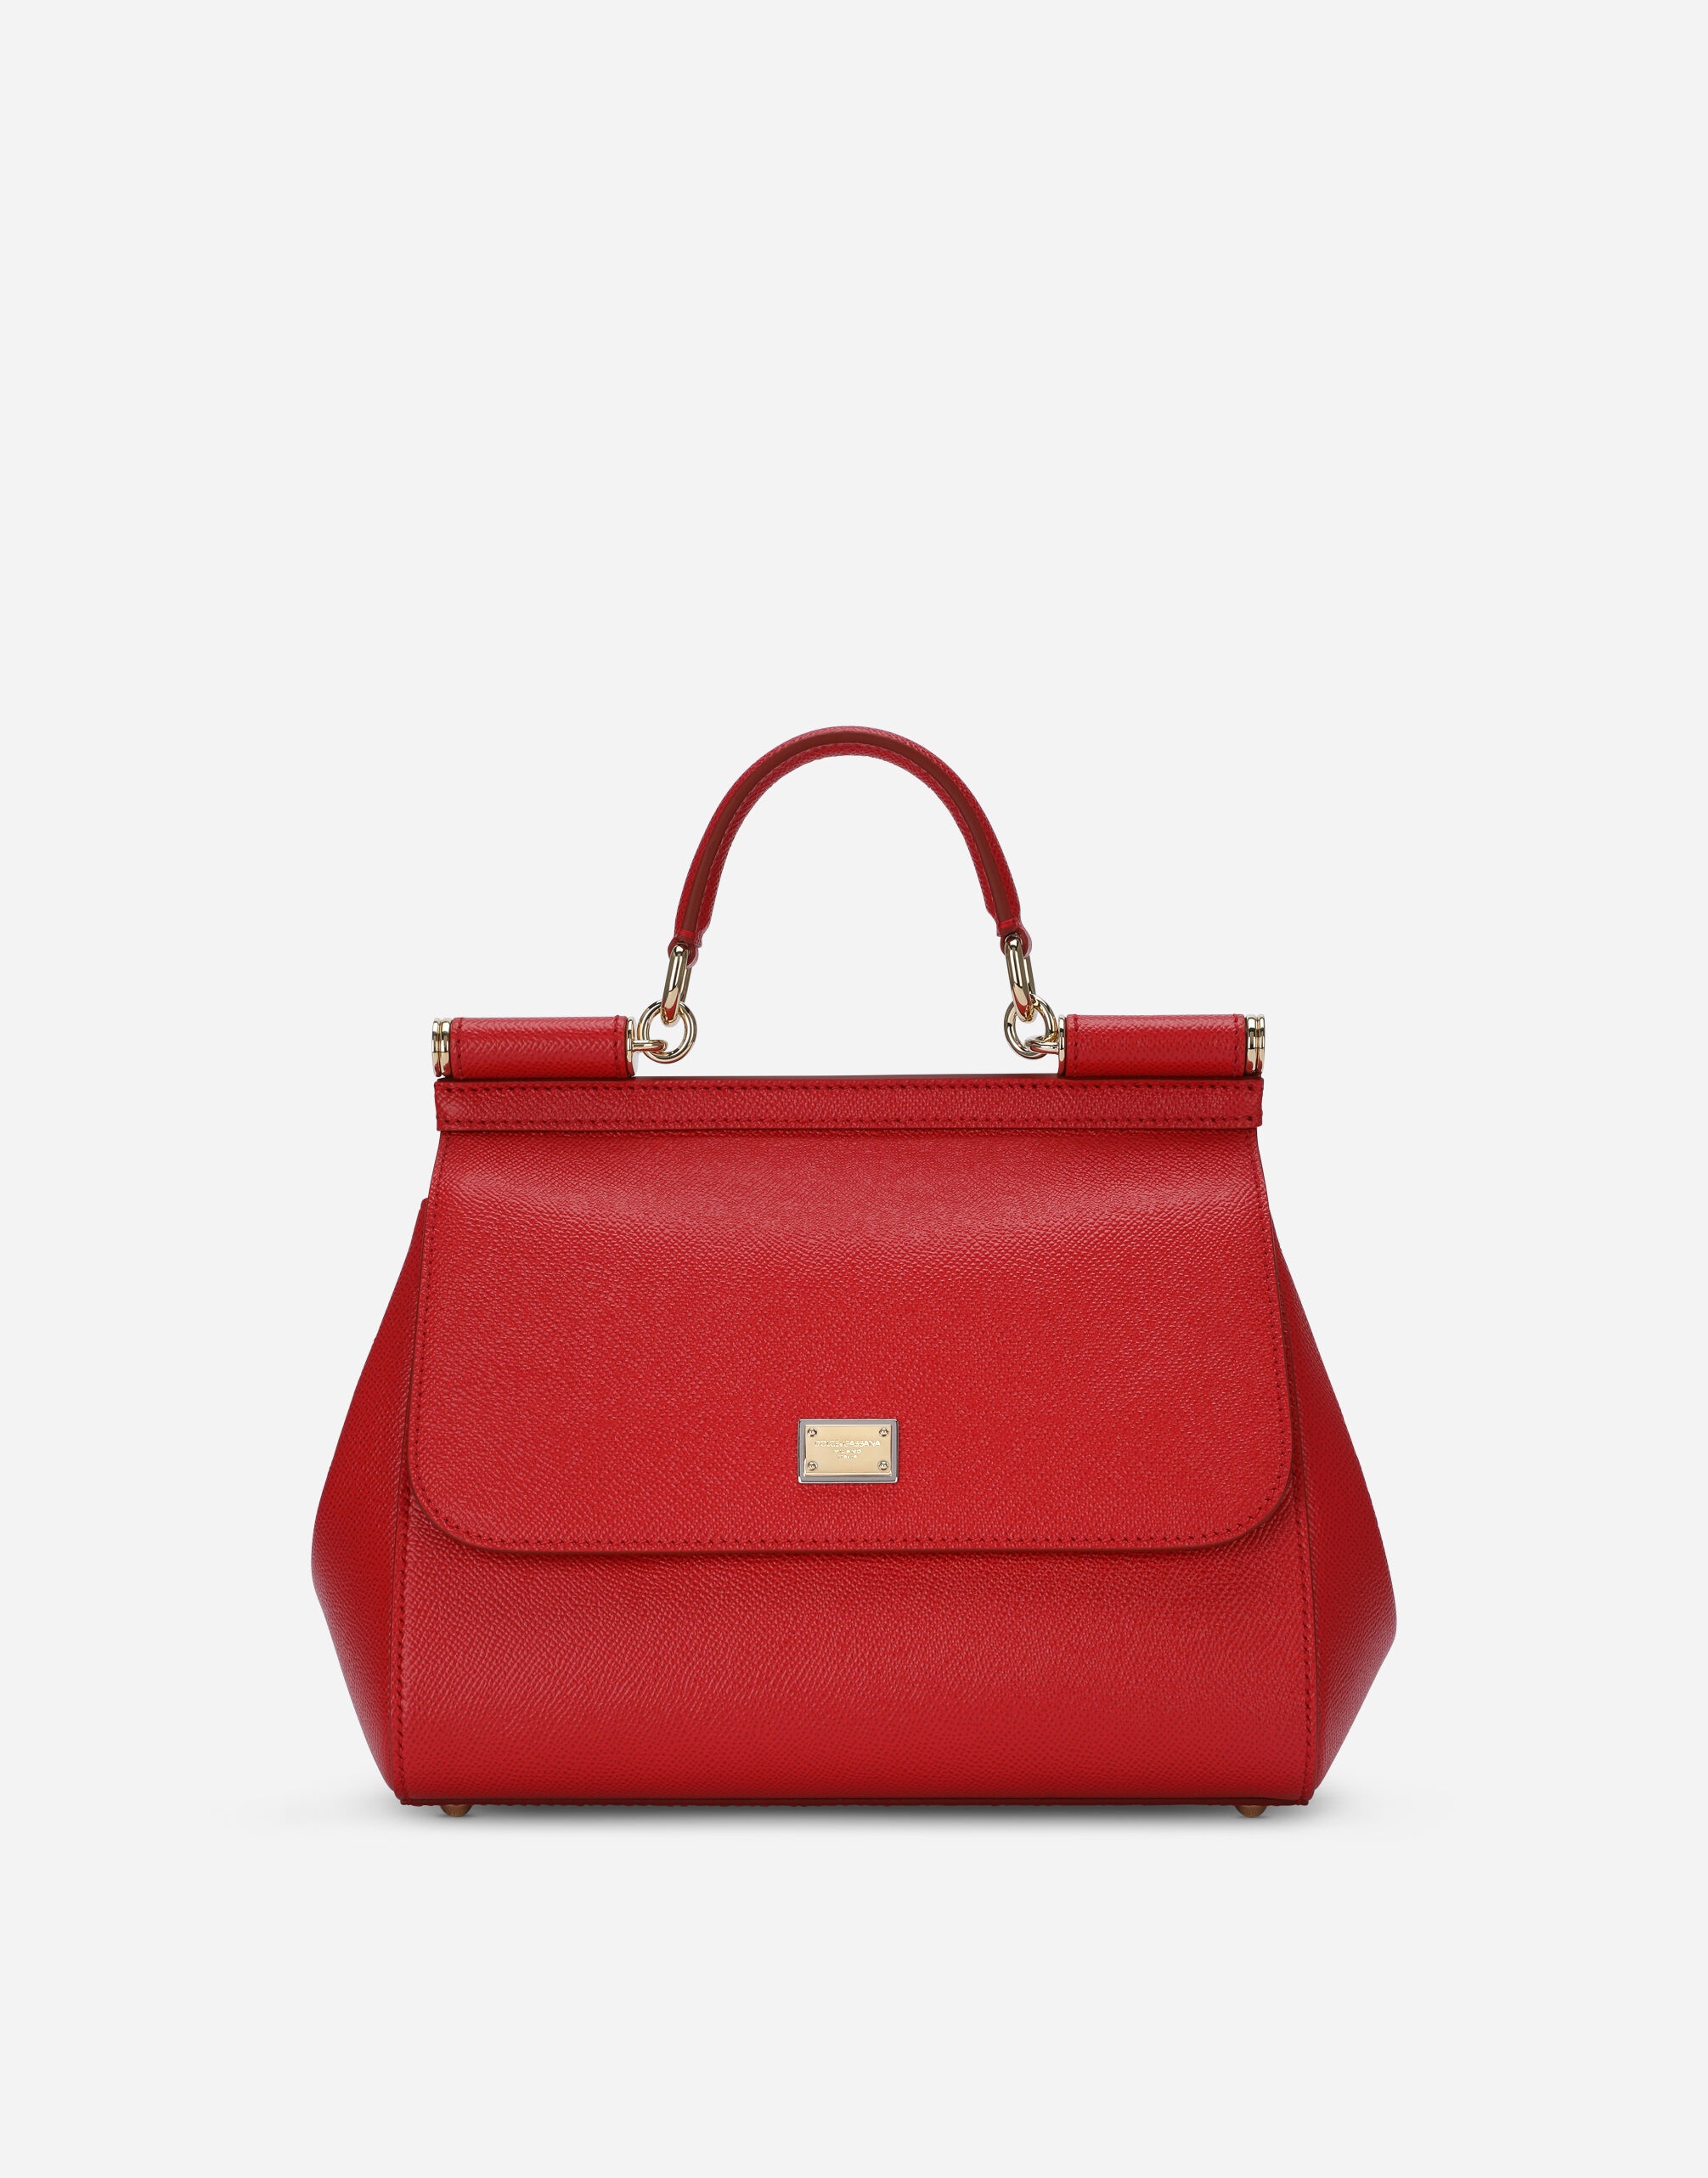 Medium Sicily handbag in dauphine leather - 1